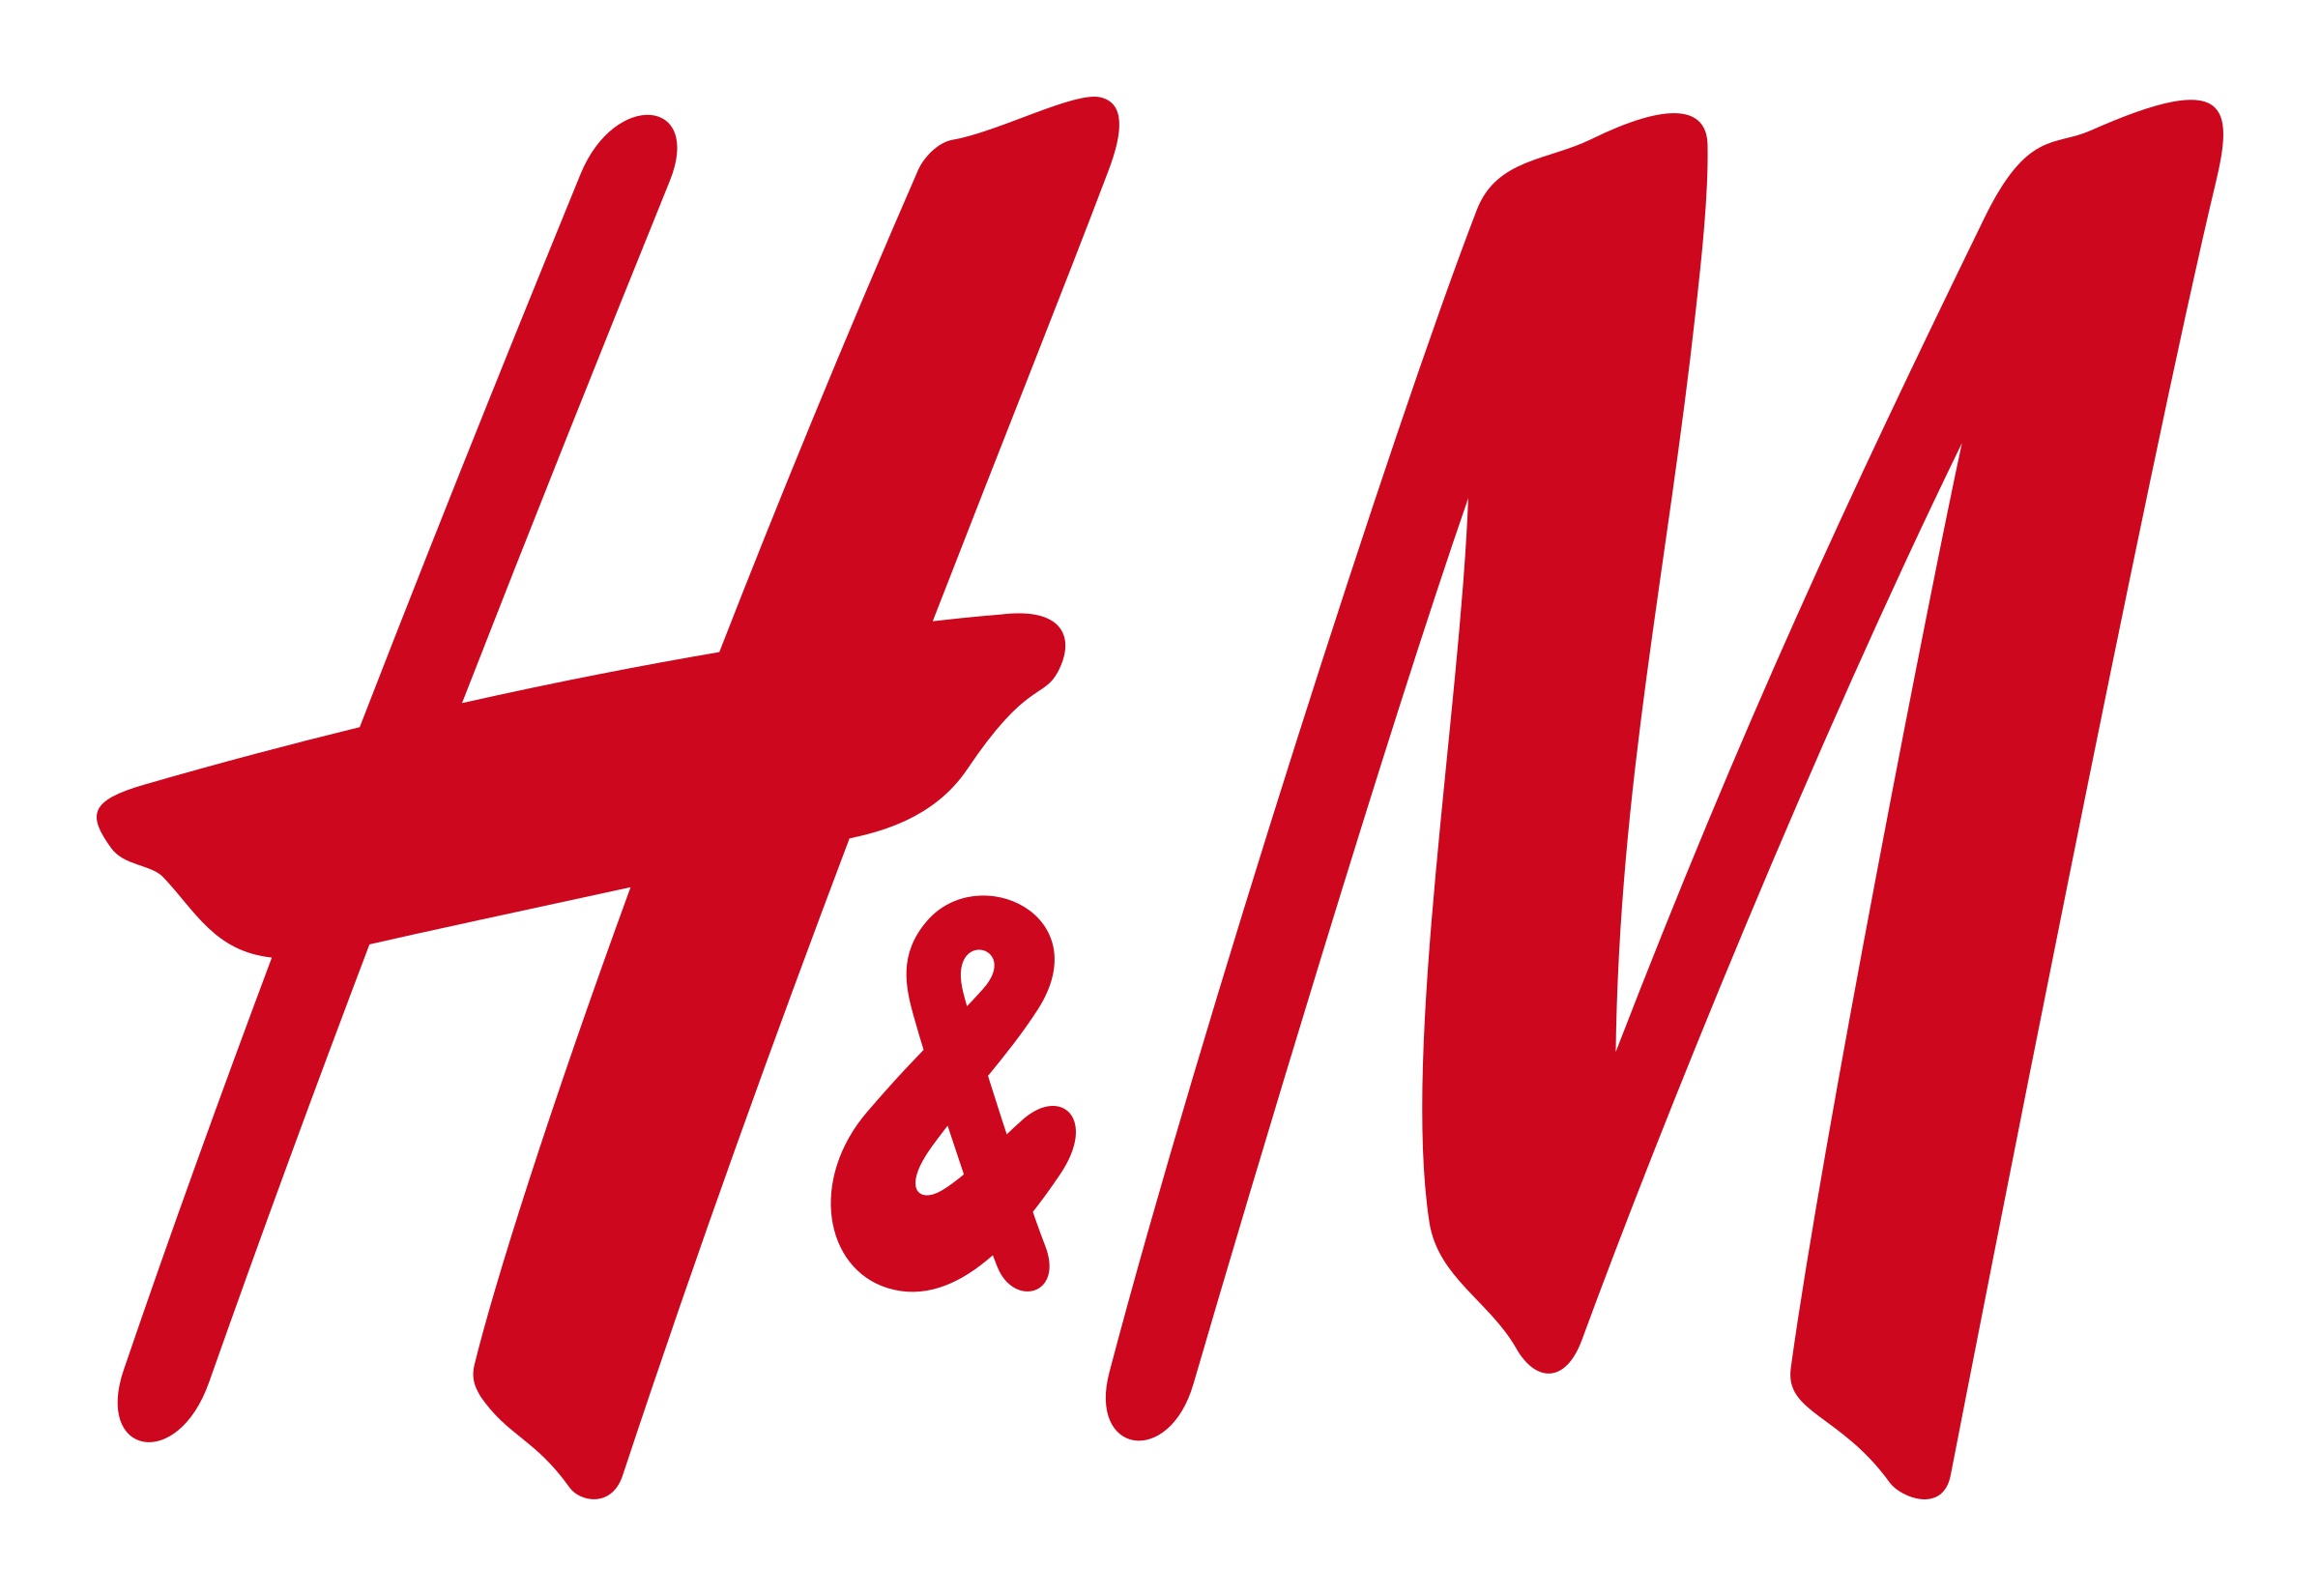 h&m